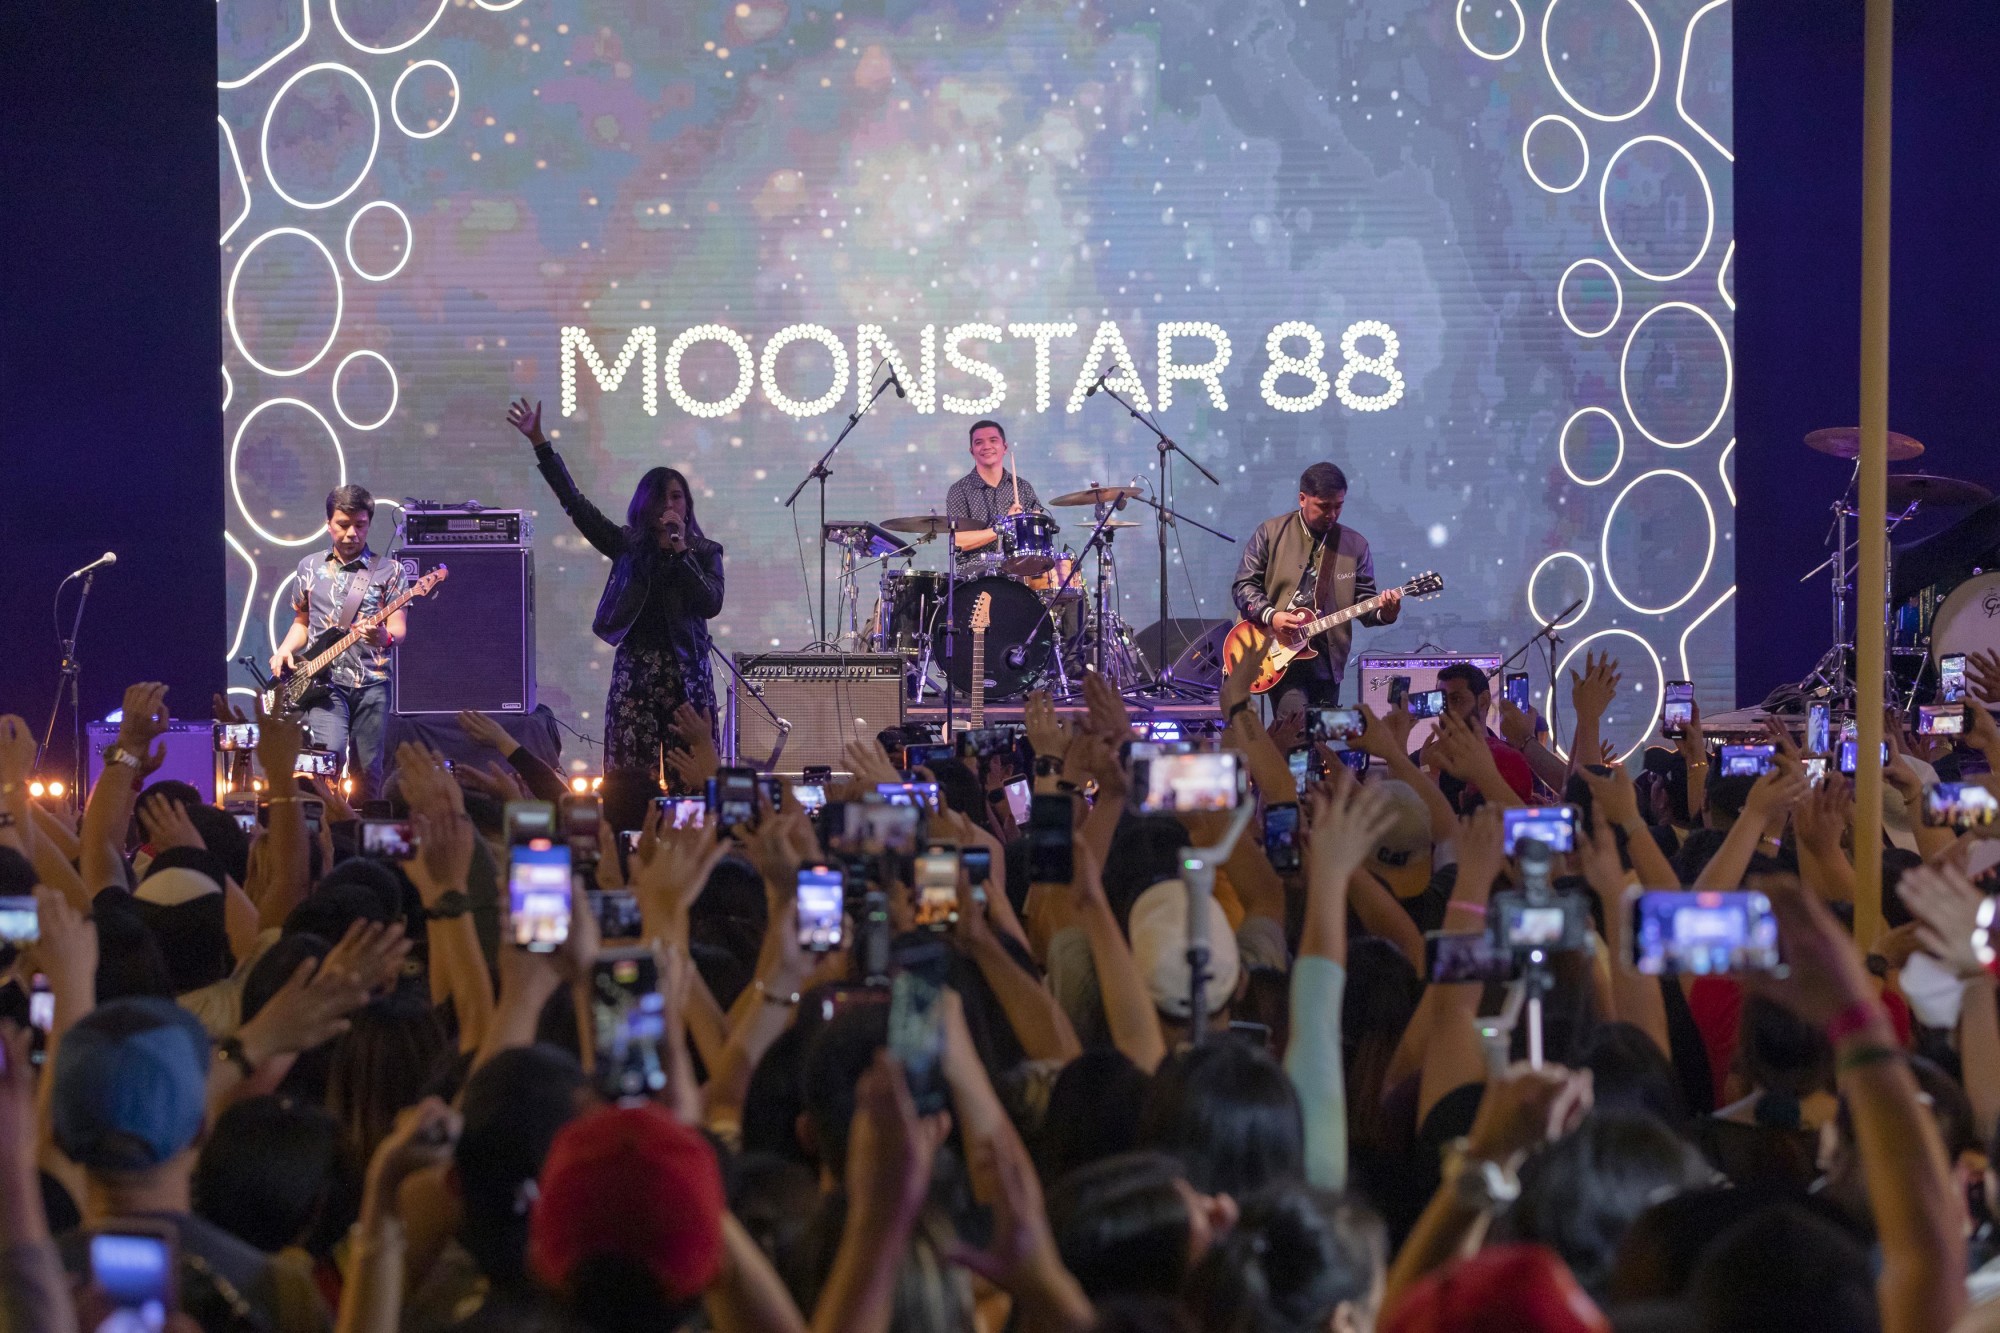 Moonstar88 perform at Festival Garden m72327